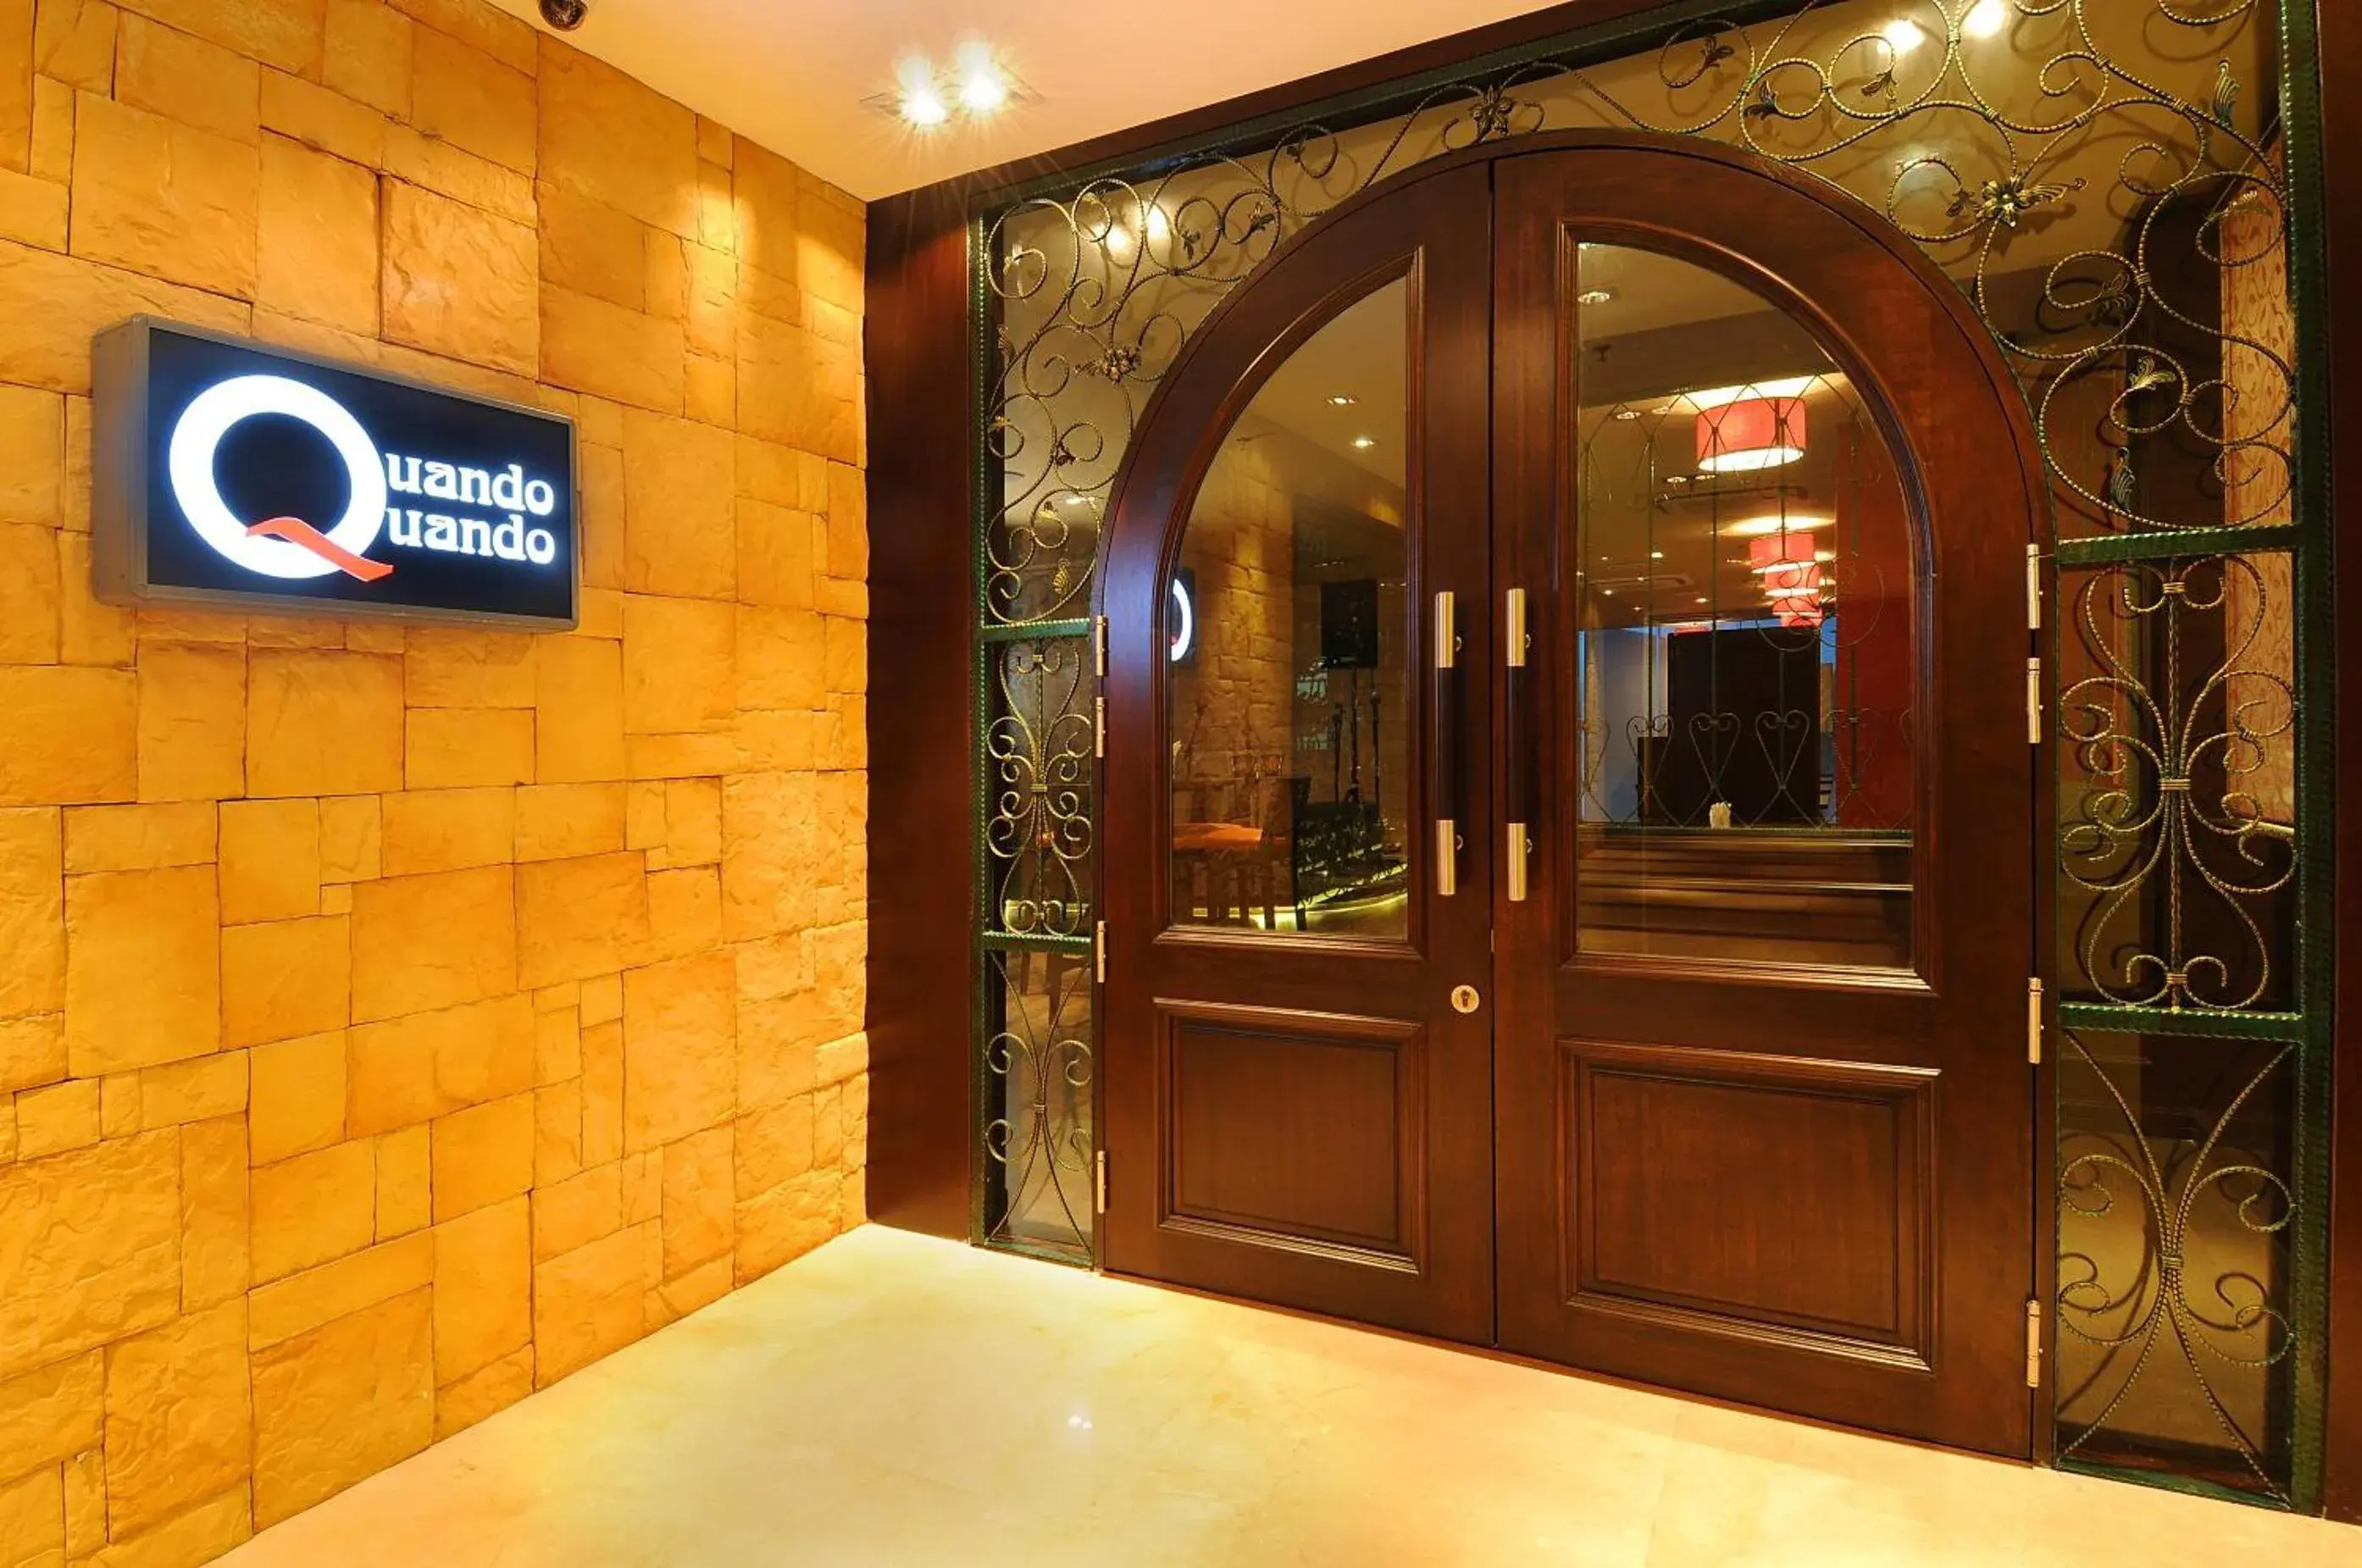 Area and facilities in Hotel Granada Johor Bahru